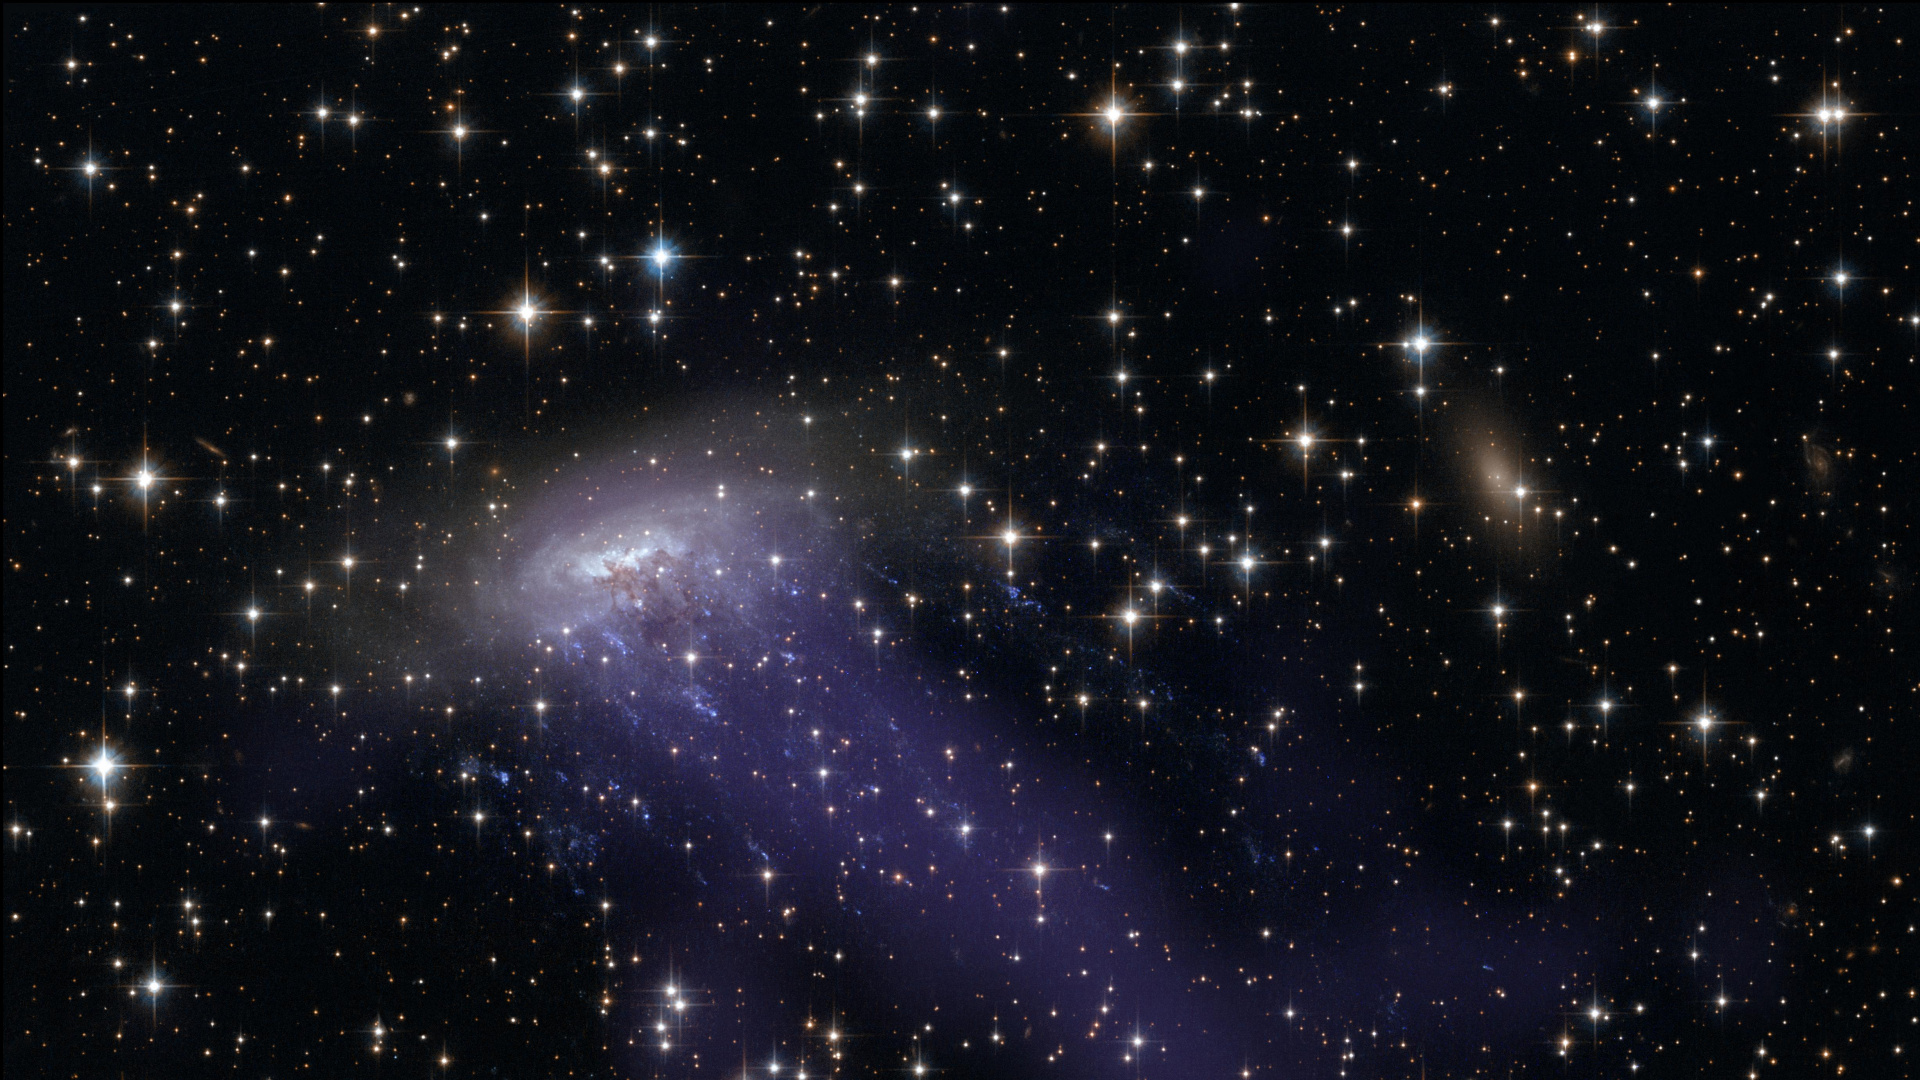 哈勃太空望远镜, 螺旋星系, 银河系的集群, 外层空间, 气氛 壁纸 1920x1080 允许